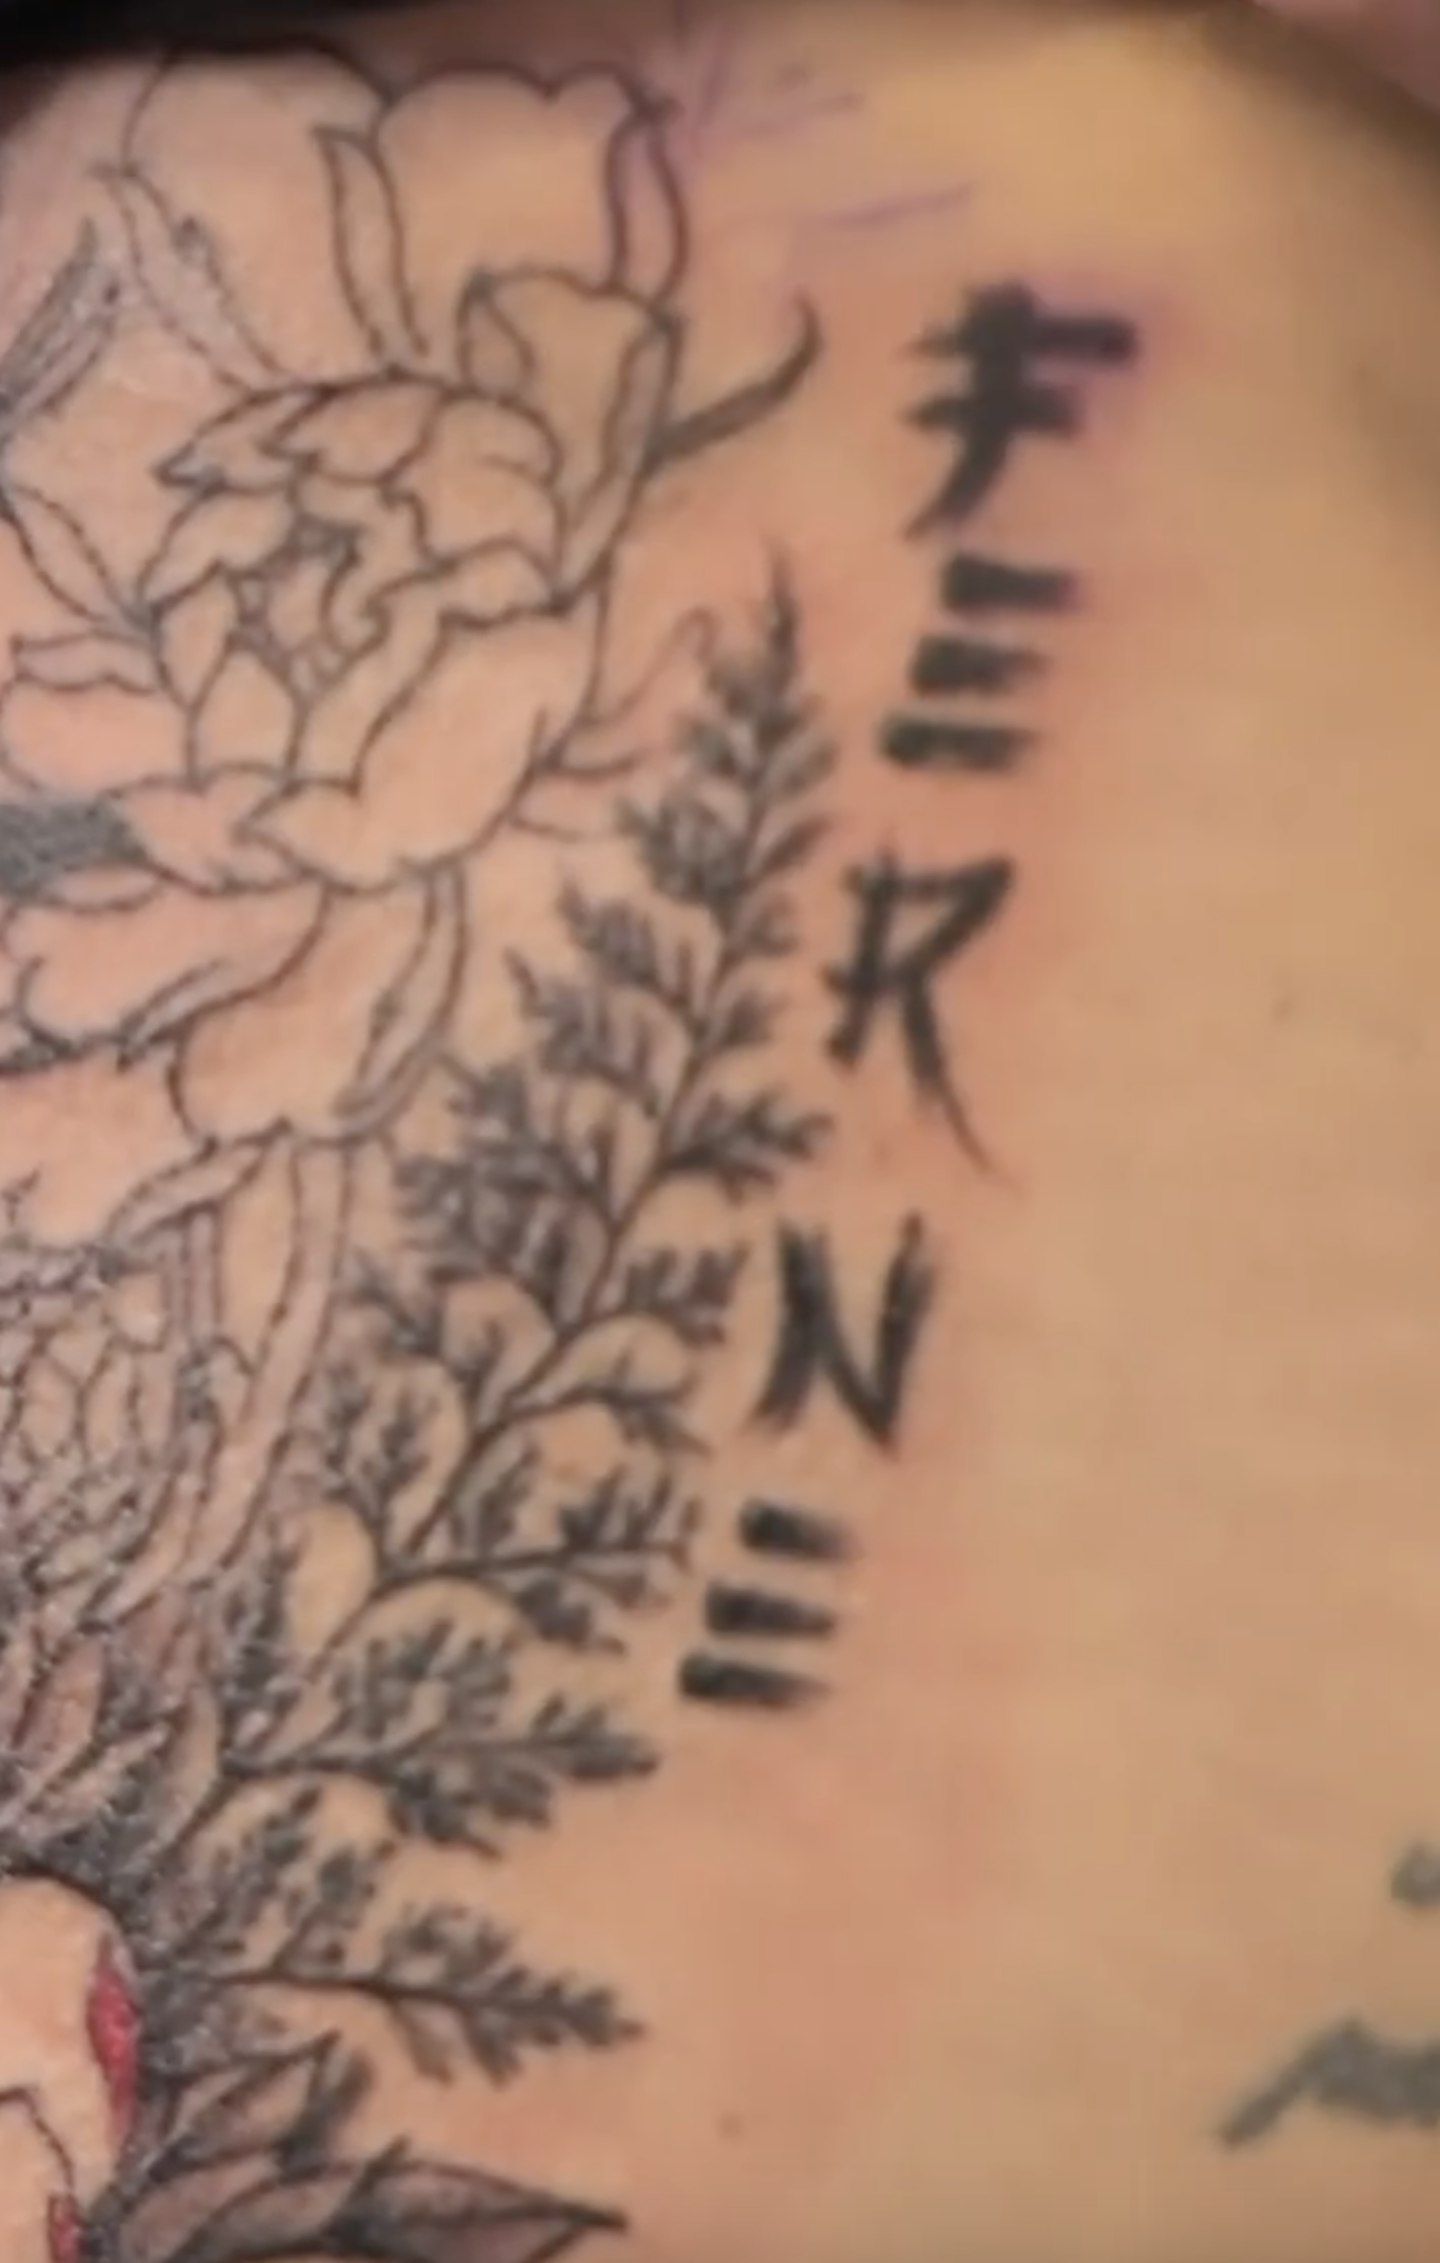 Lorri Haines' tattoo of Ferne McCann's name